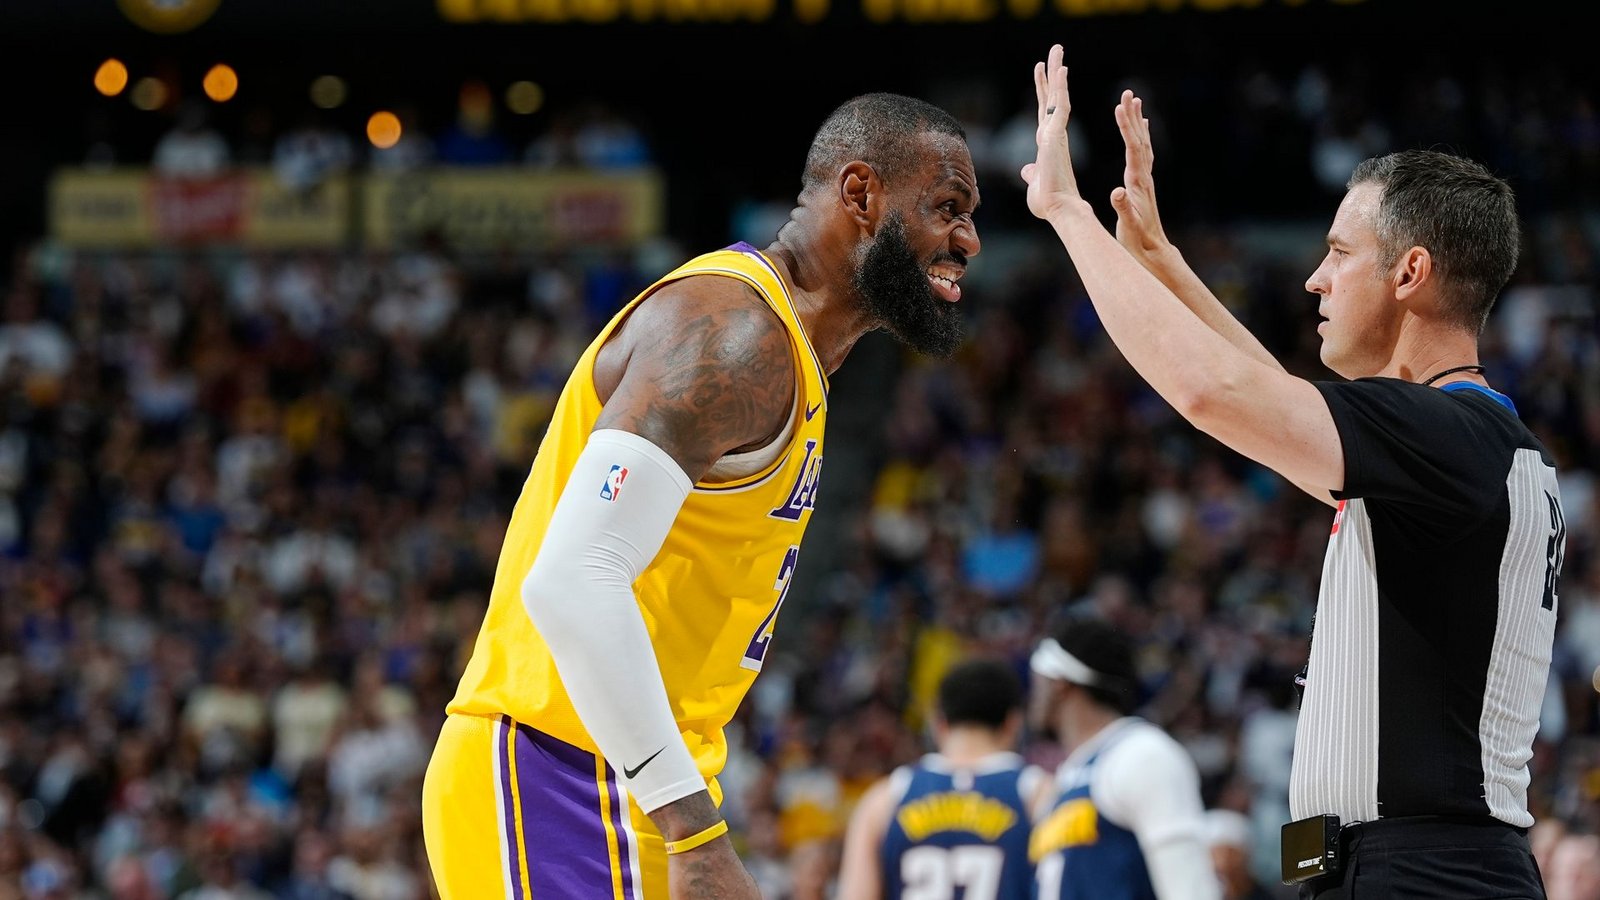 NBA-Superstar LeBron James ist mit den Los Angeles Lakers in den Playoffs gescheitert.Foto: David Zalubowski/AP/dpa